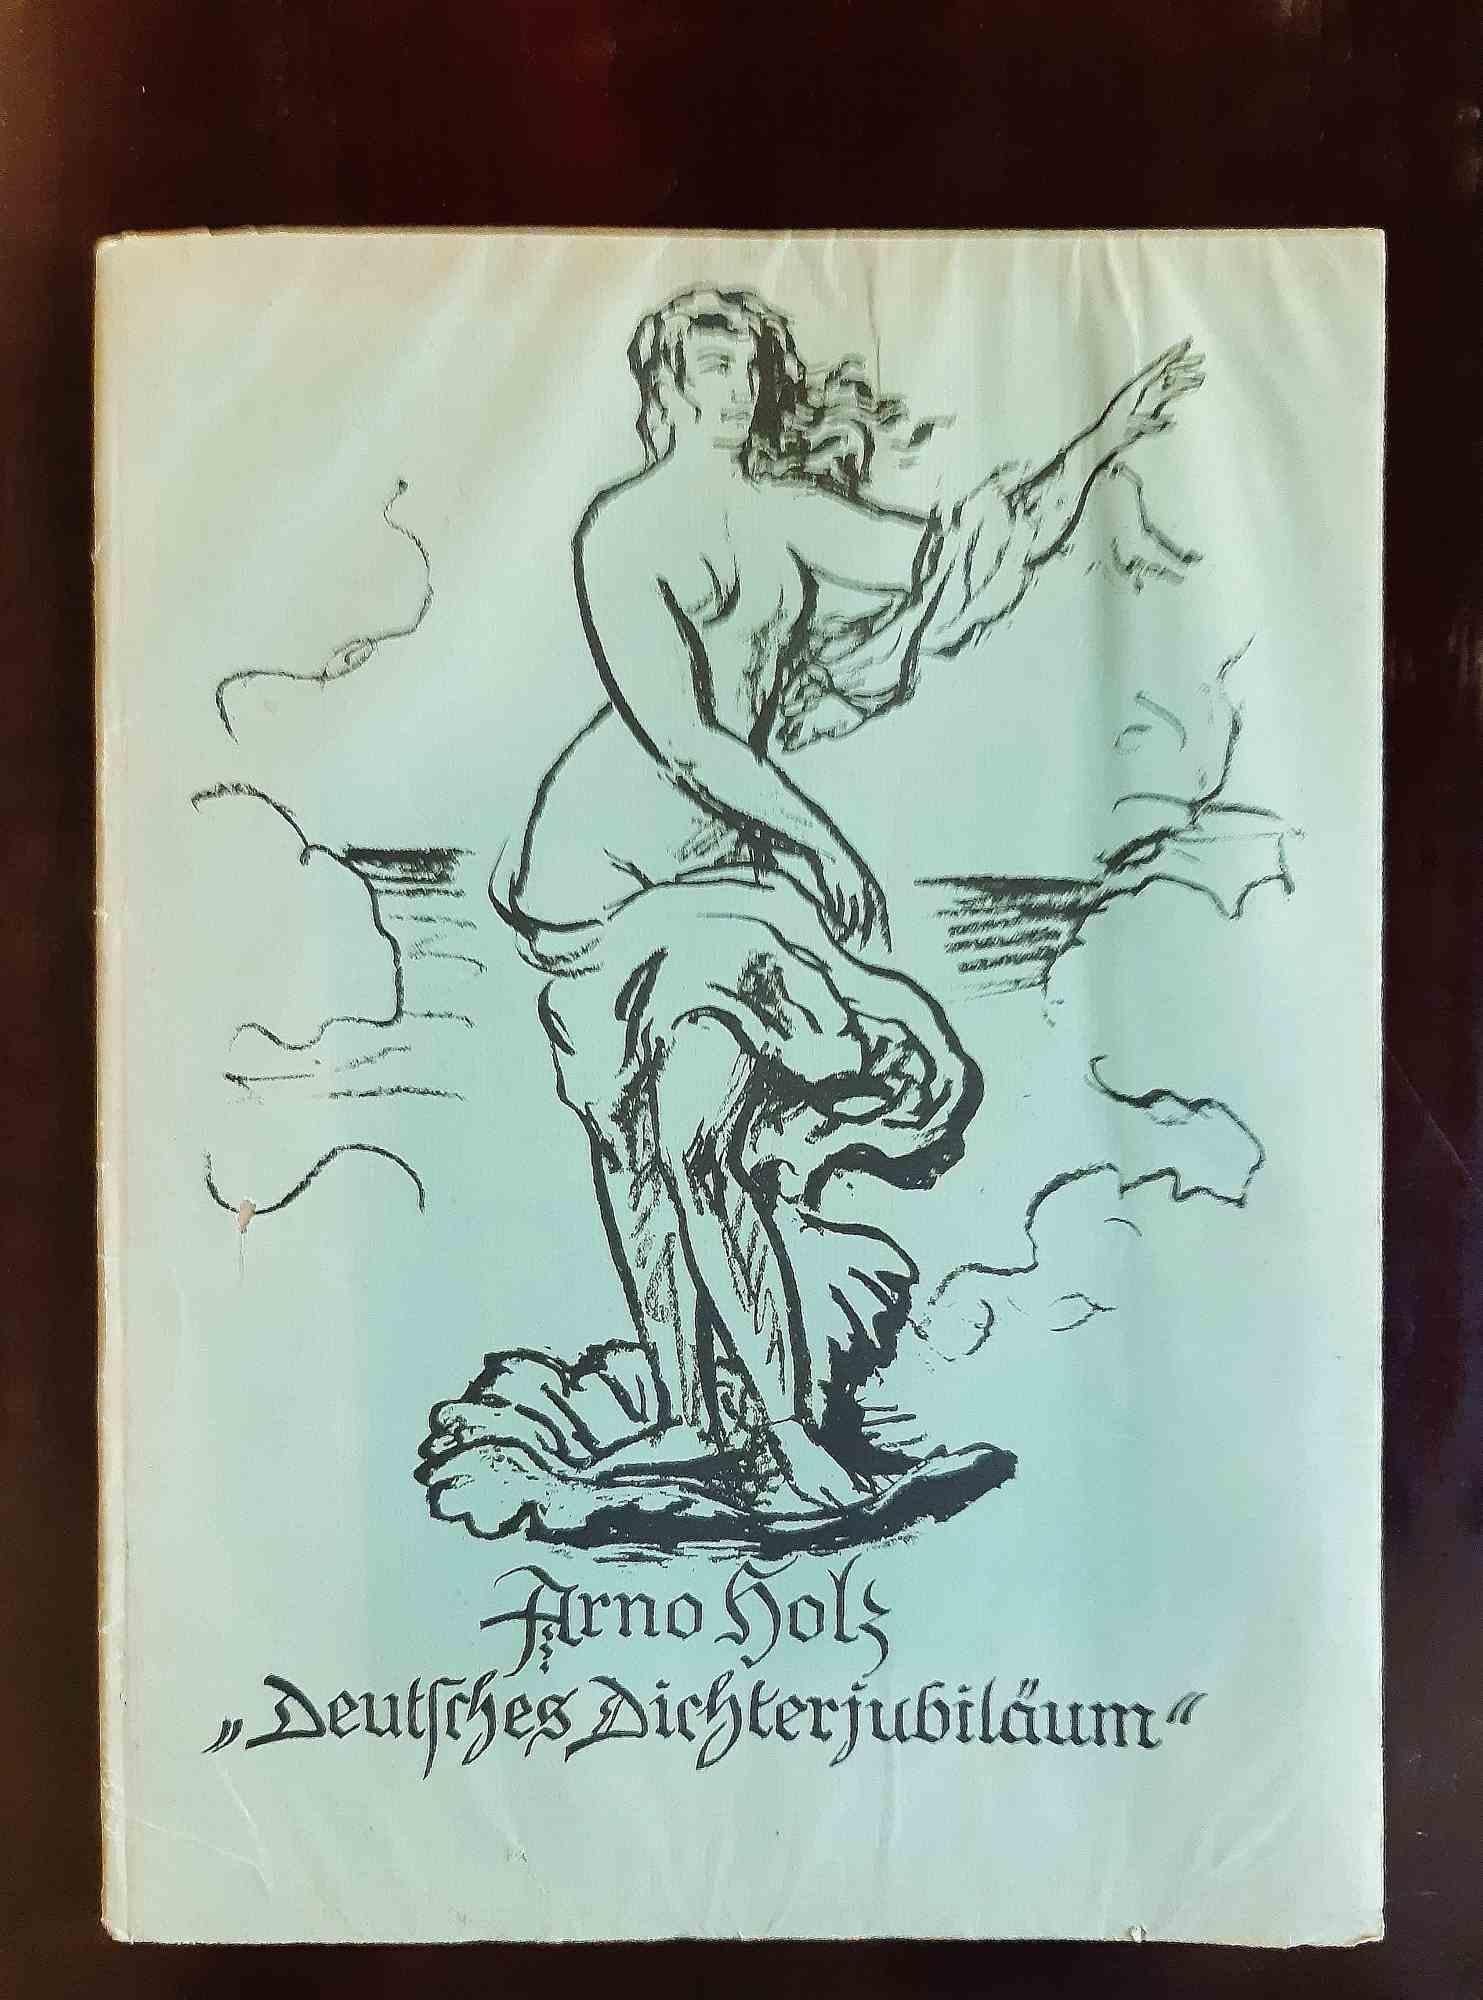 Deutsches Dichterjubilaum - Rare Book Illustrated by Hans Steiner - 1923